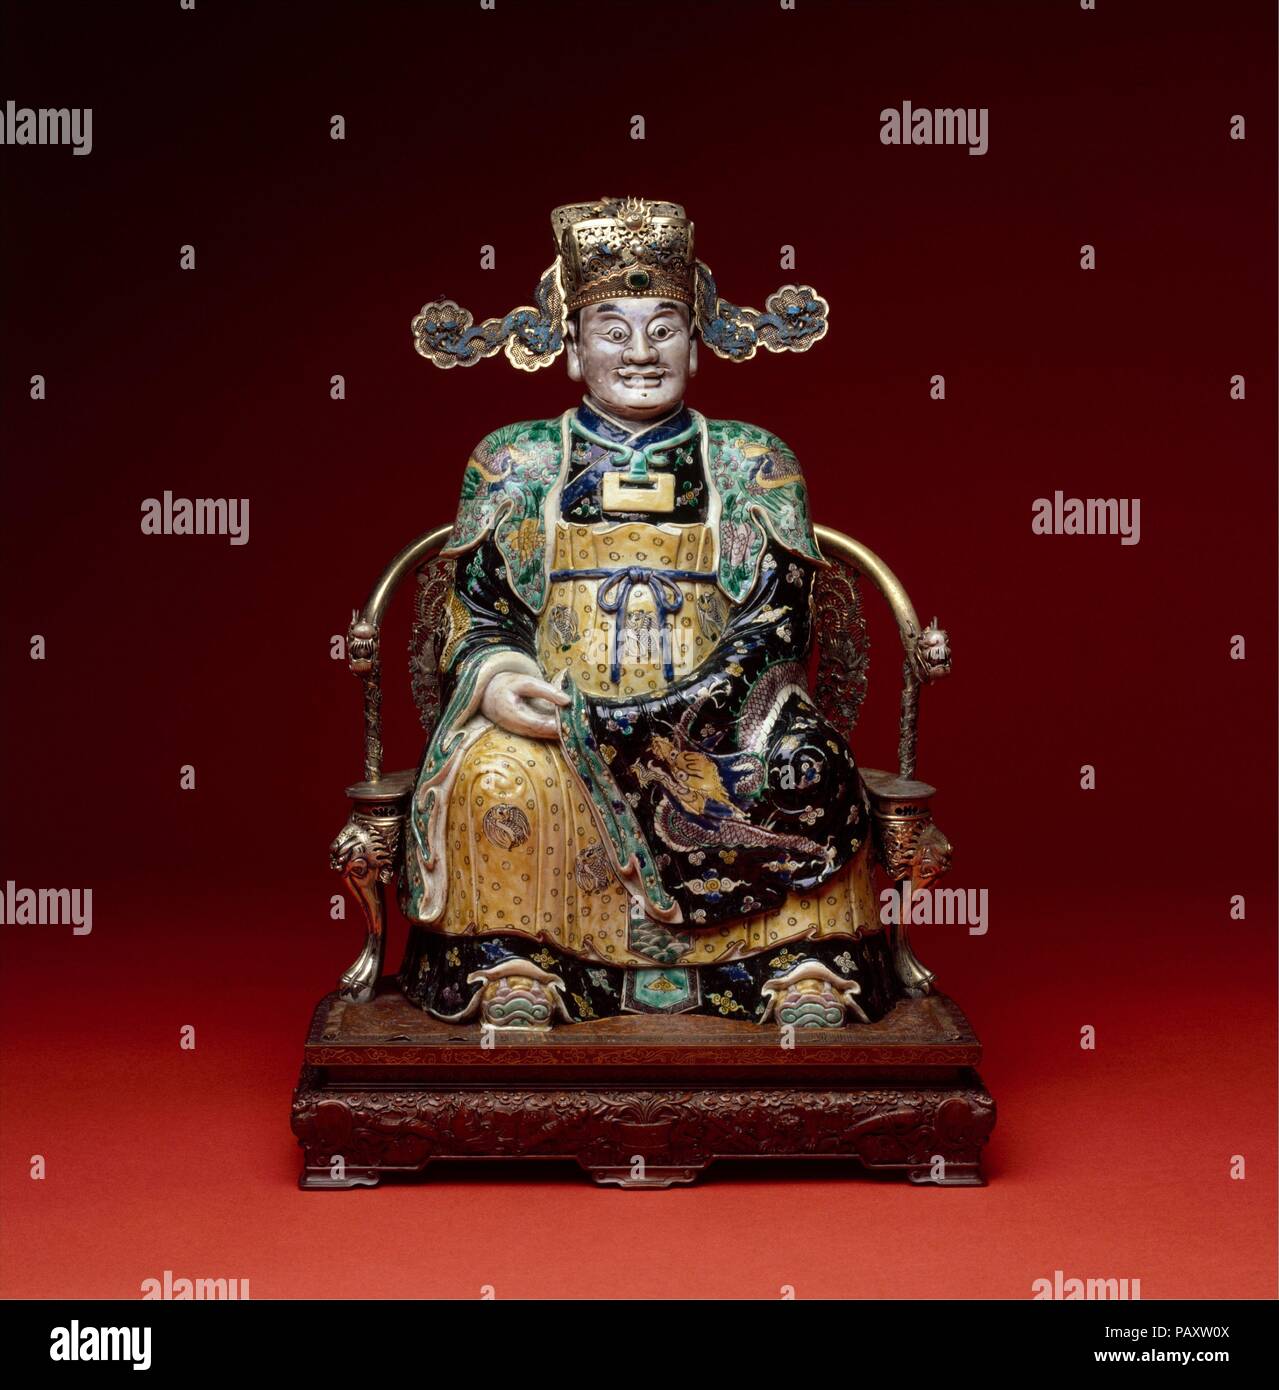 - La figura, eventualmente il dio della ricchezza nel suo aspetto militare. Cultura: la Cina. Dimensioni: H. 22 3/4 in. (57,8 cm). Data: tardo 17th-inizio del XVIII secolo. Il tentativo di identificazione di questa figura con il dio della ricchezza è basata sul cappello che indossa. Uno dei molti dèi popolare in Cina, il dio della ricchezza (Cai Shen) è pensato per derivare da una figura storica che ha vissuto durante la dinastia Qin (221-206 a.C.), e in seguito è stato divinizzato e venerato per la sua capacità di promuovere la ricchezza e la buona fortuna. Museo: Metropolitan Museum of Art di New York, Stati Uniti d'America. Foto Stock